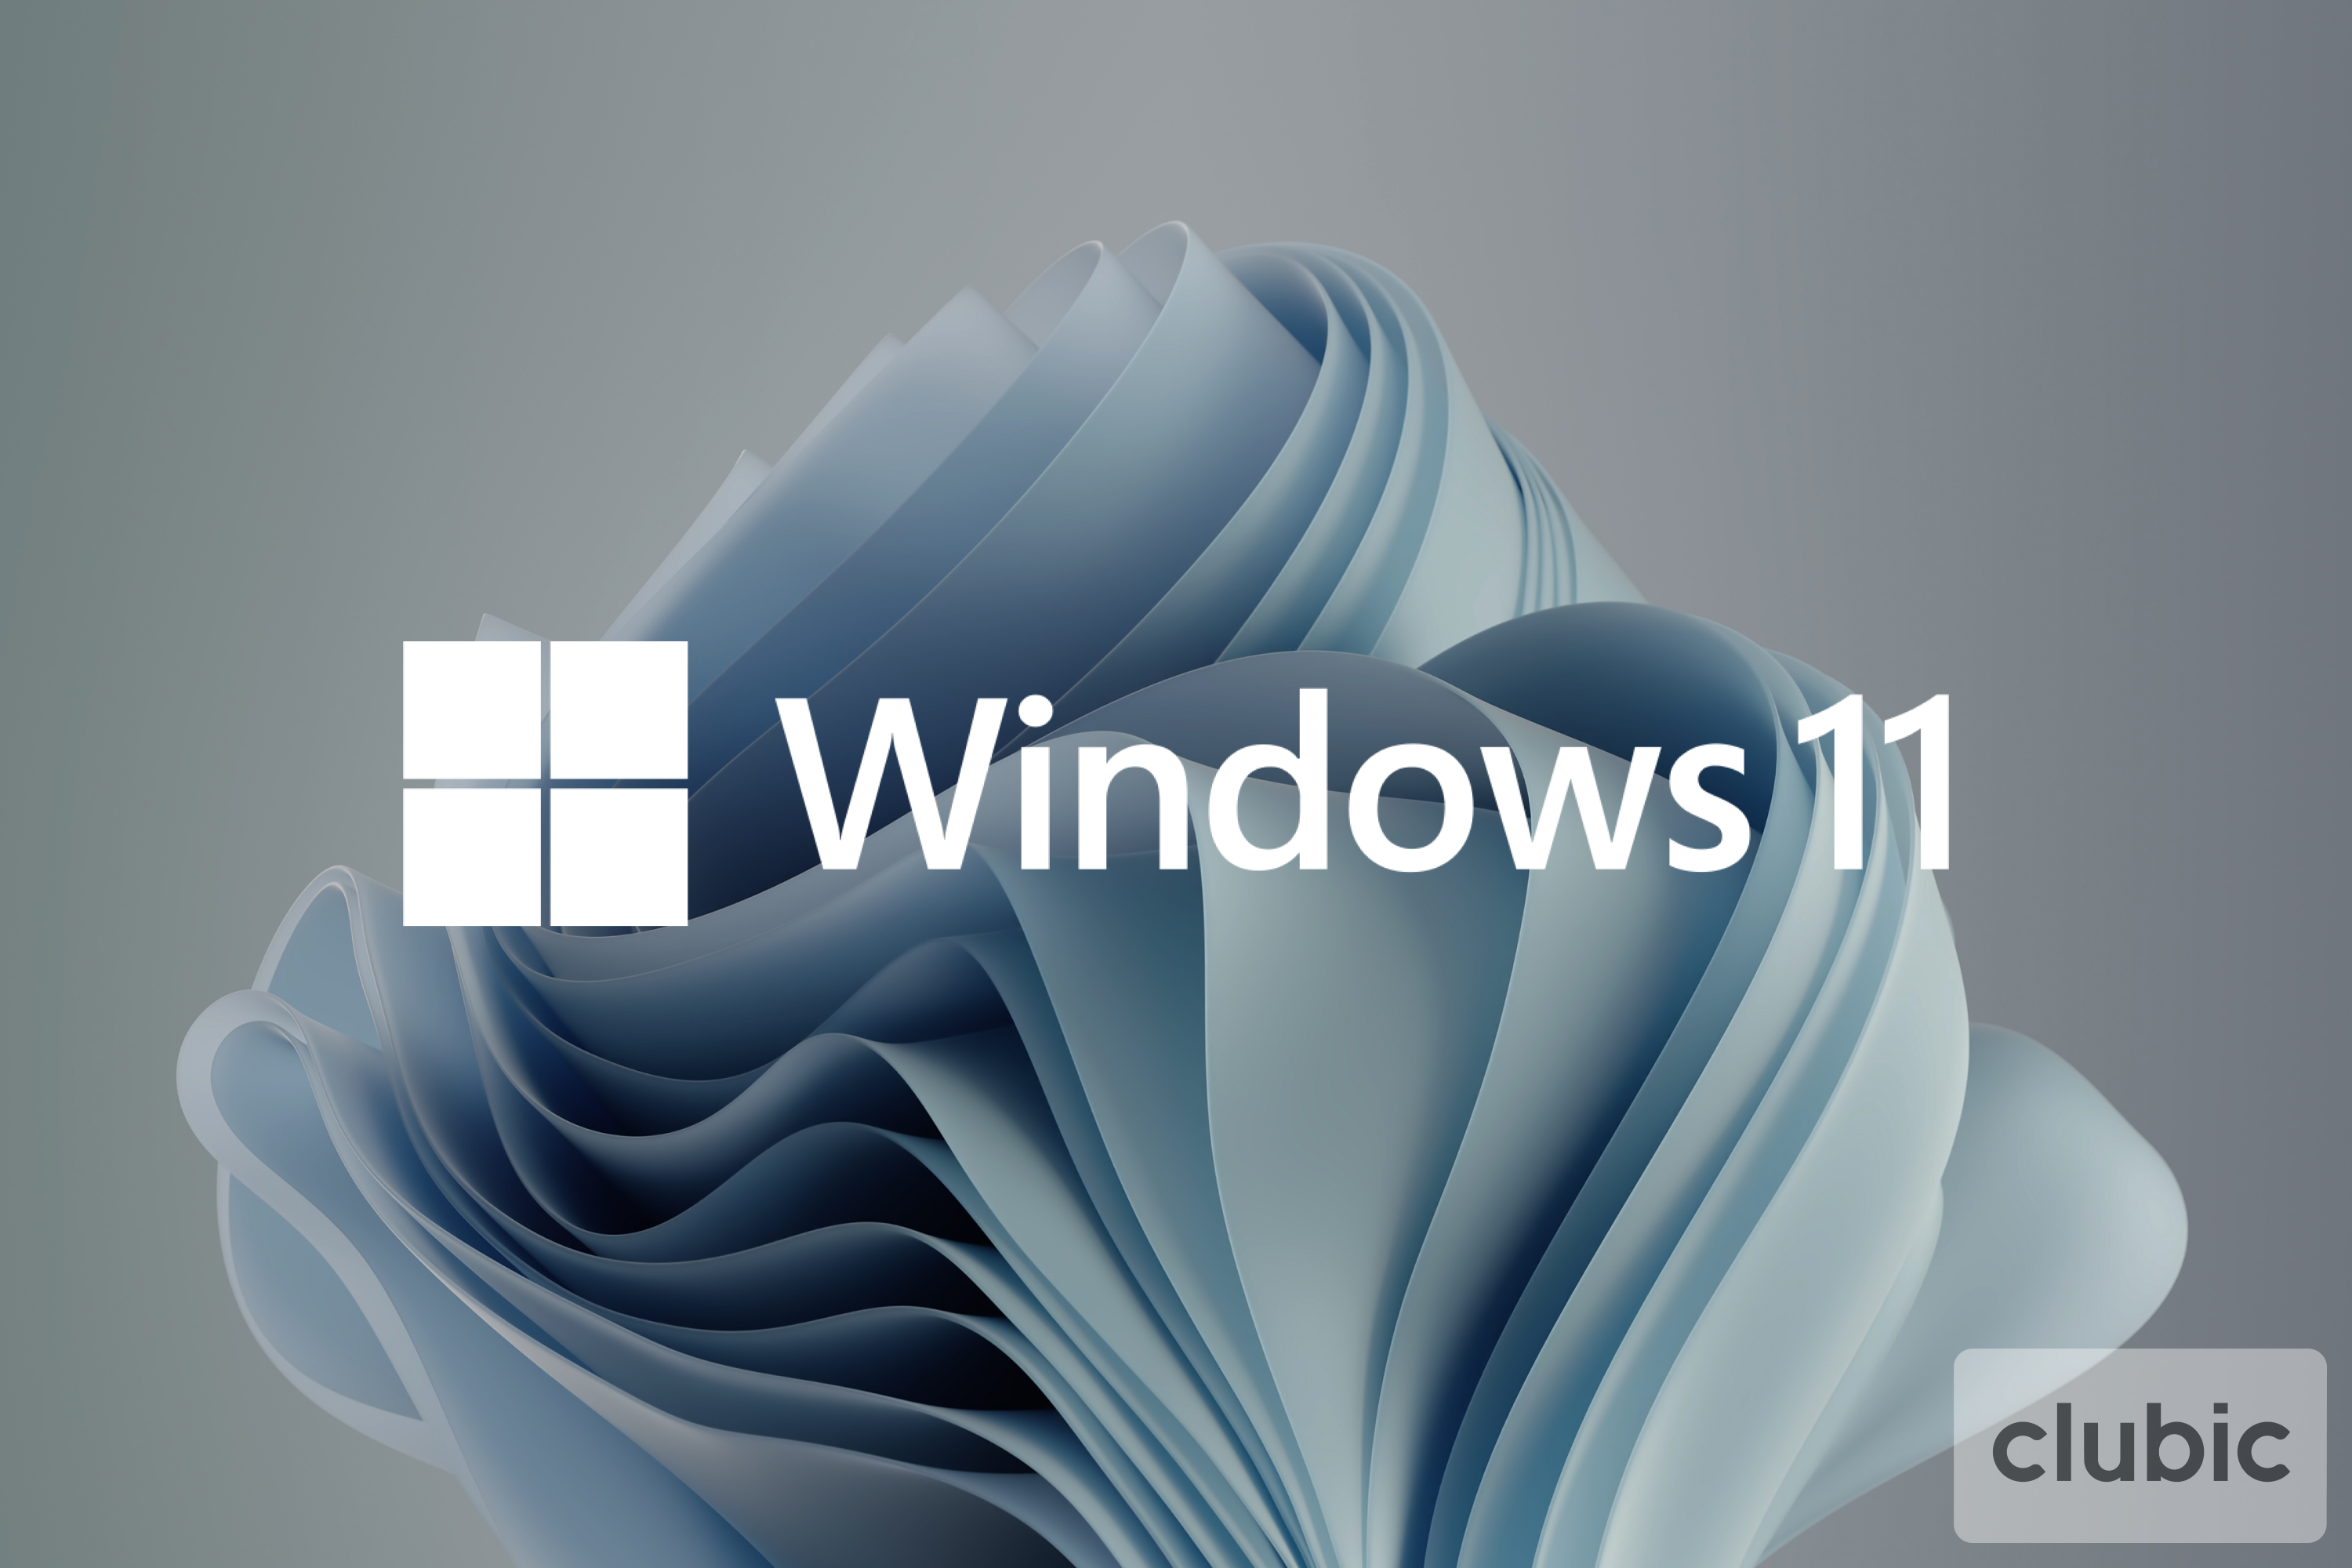 Windows 11 : certains PC incompatibles sont compatibles mais il s'agit de faux-négatifs selon Microsoft